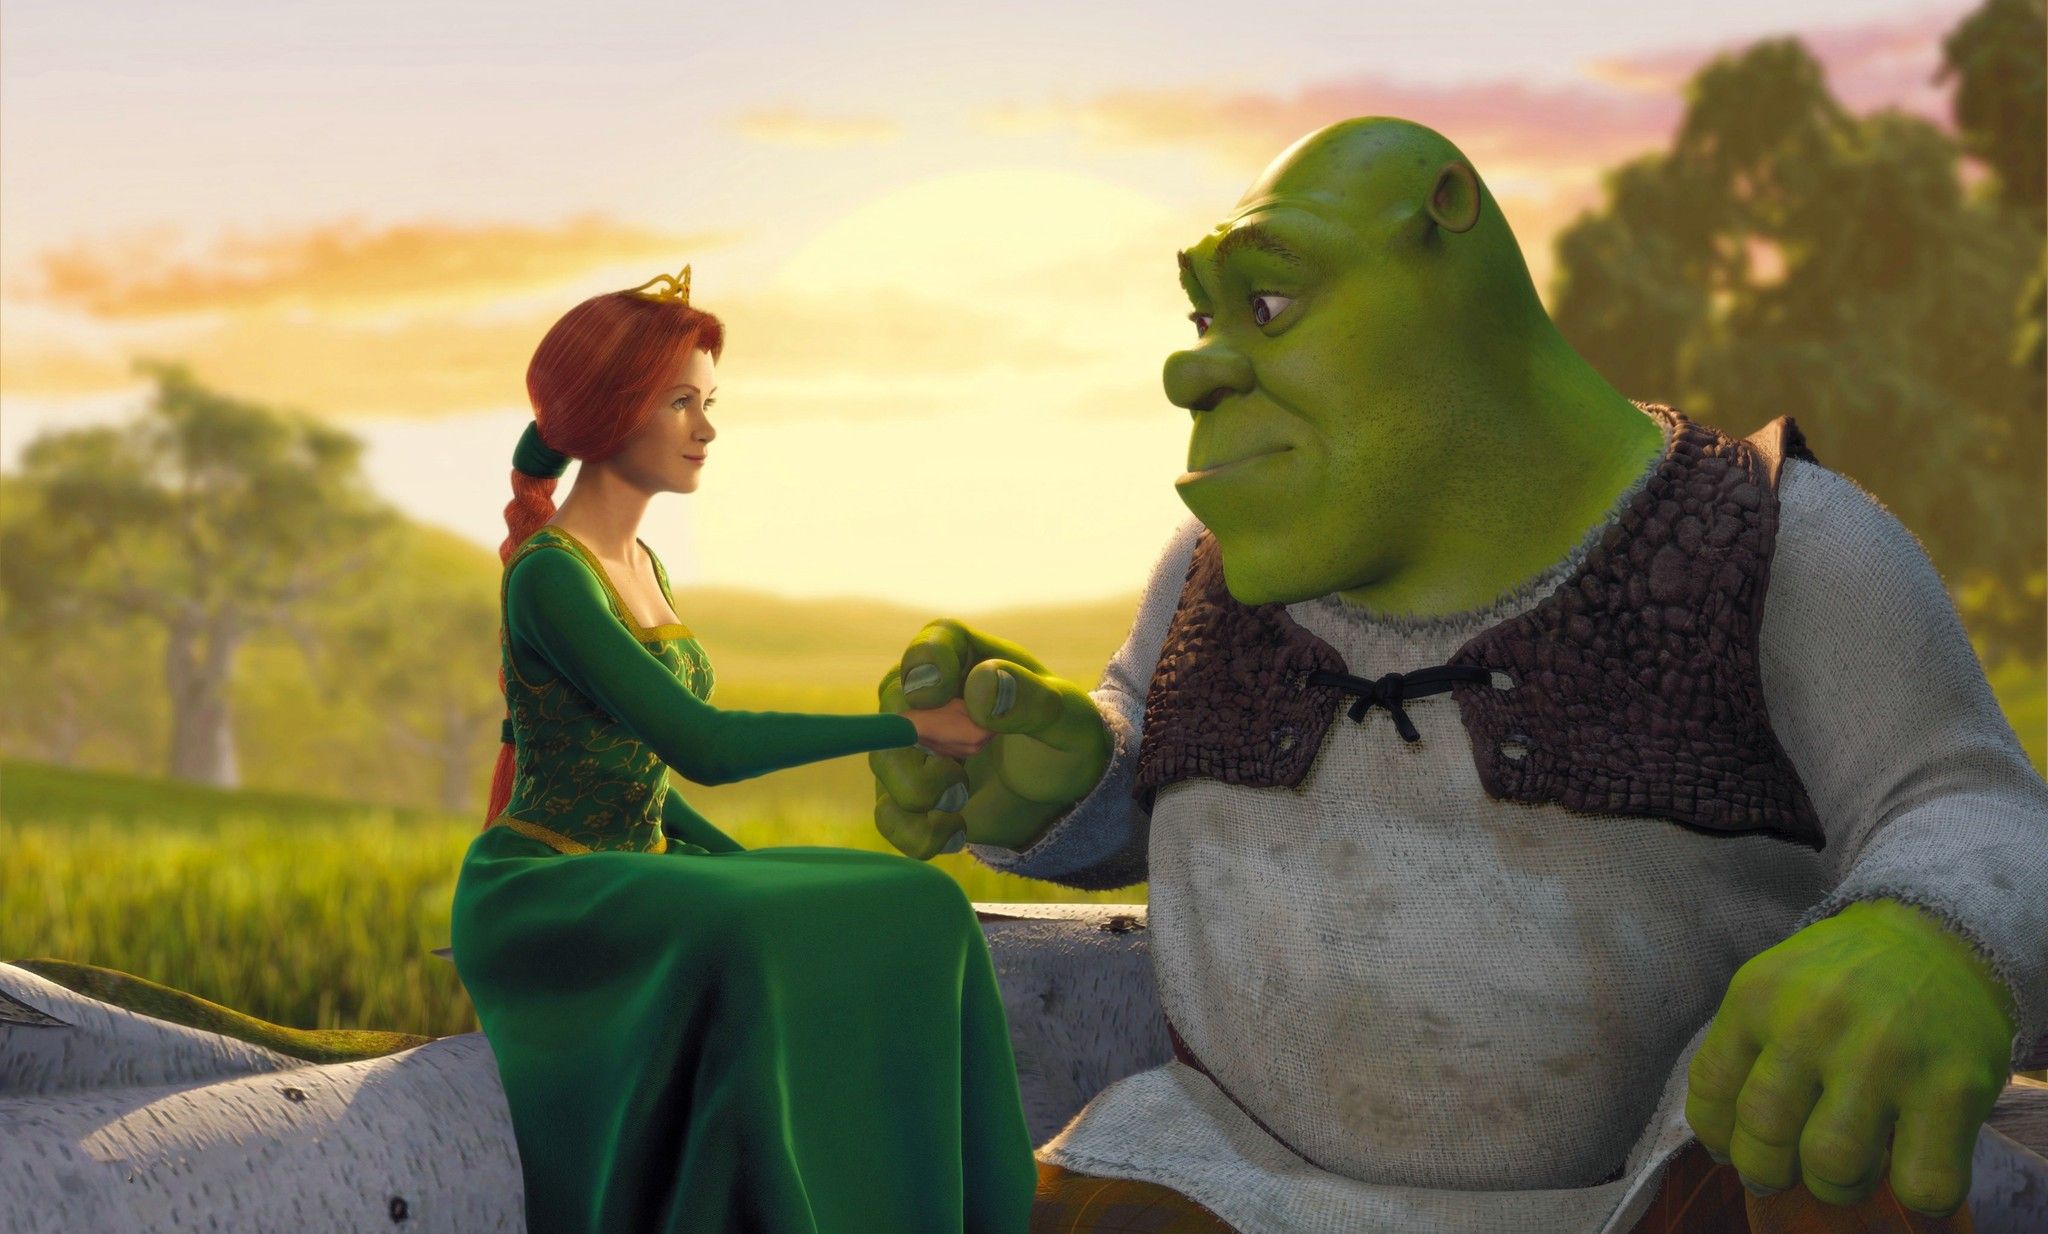 Shrek and Fiona in Shrek (2001)